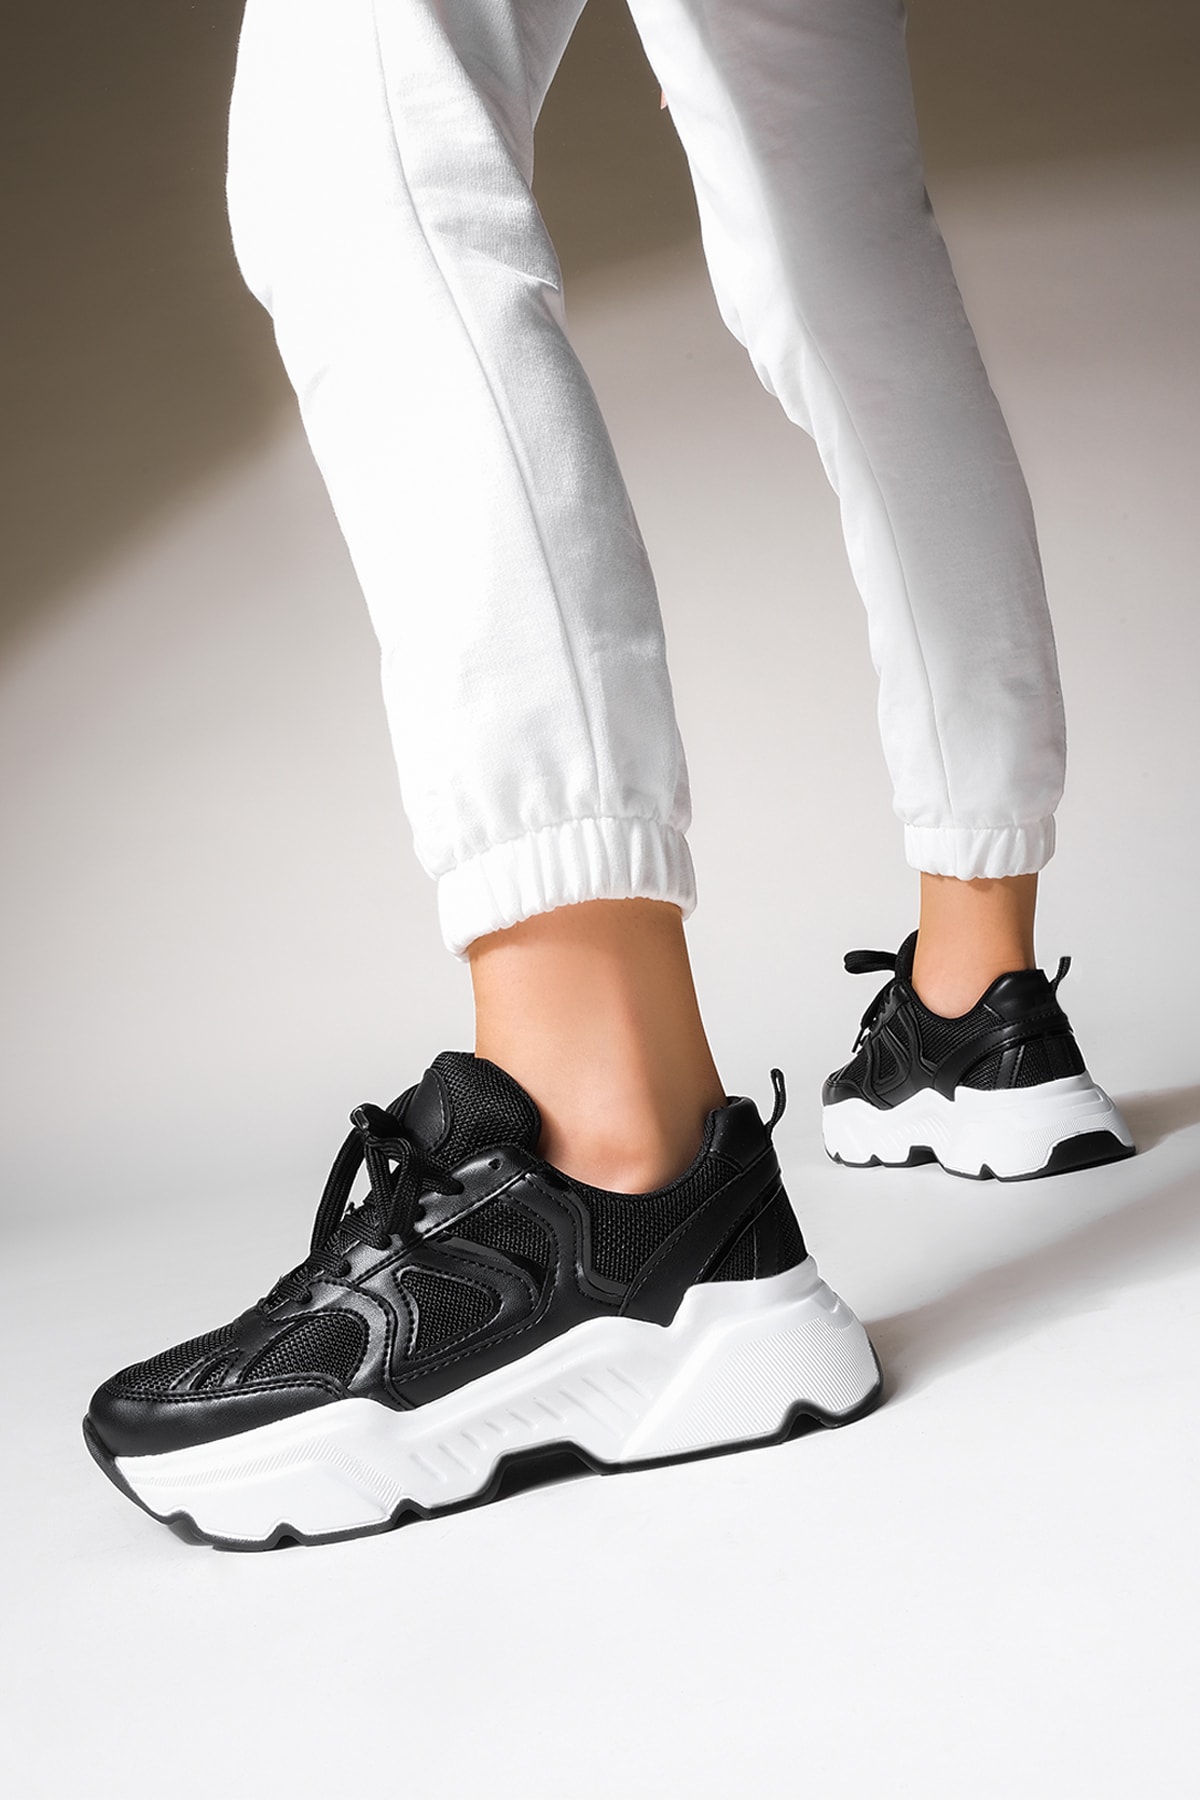 Marjin Kadın Sneaker Yüksek Taban Bağcıklı Spor Ayakkabı Menles siyah